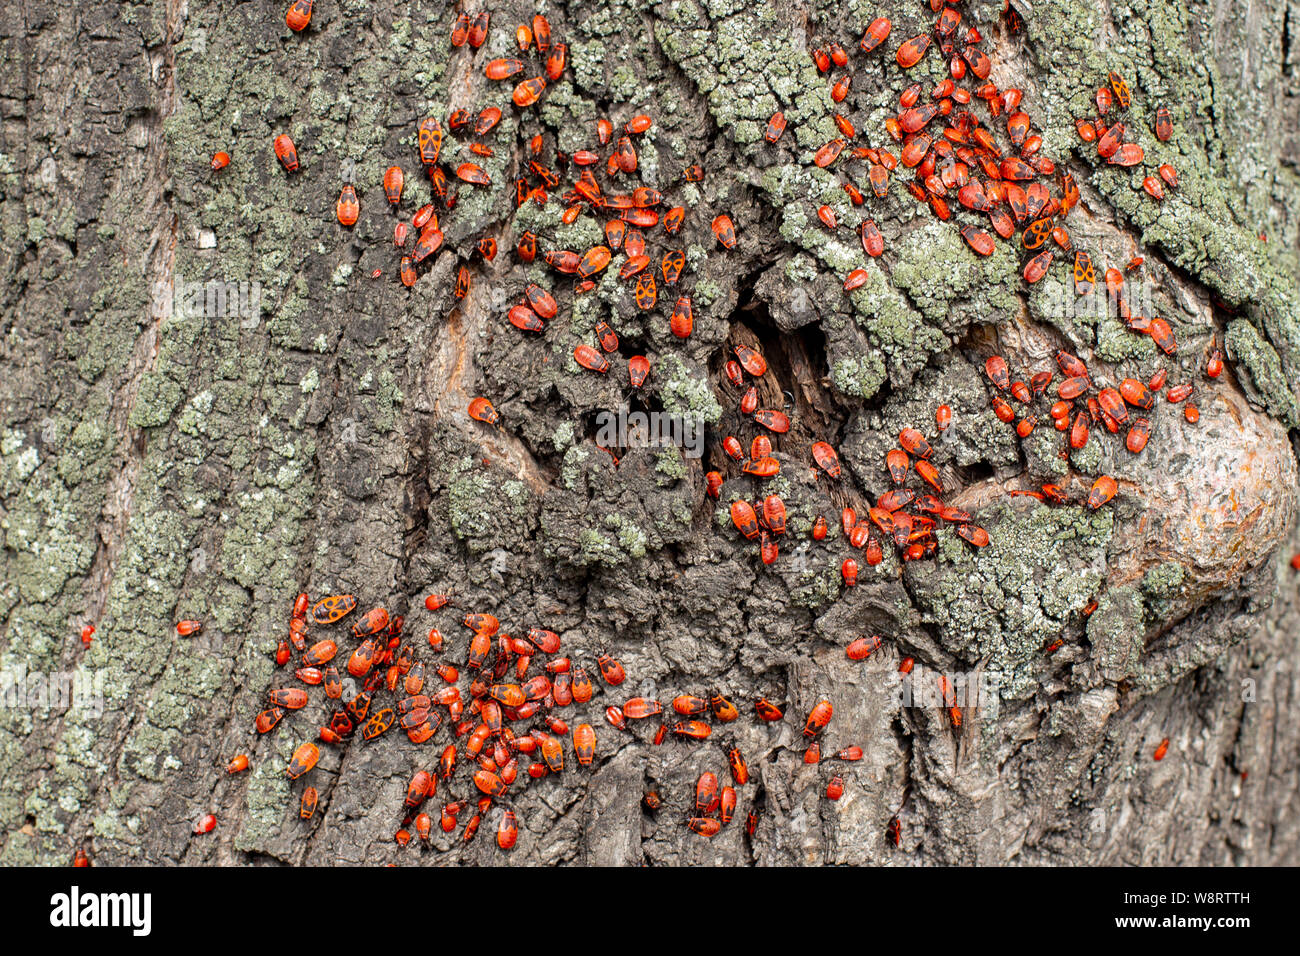 Firebug Bug soldat, une grande colonie de Pyrrhocoris apterus les coléoptères adultes et enfants sur un tilleul tronc. Belle beetle avec un brillant patt Banque D'Images